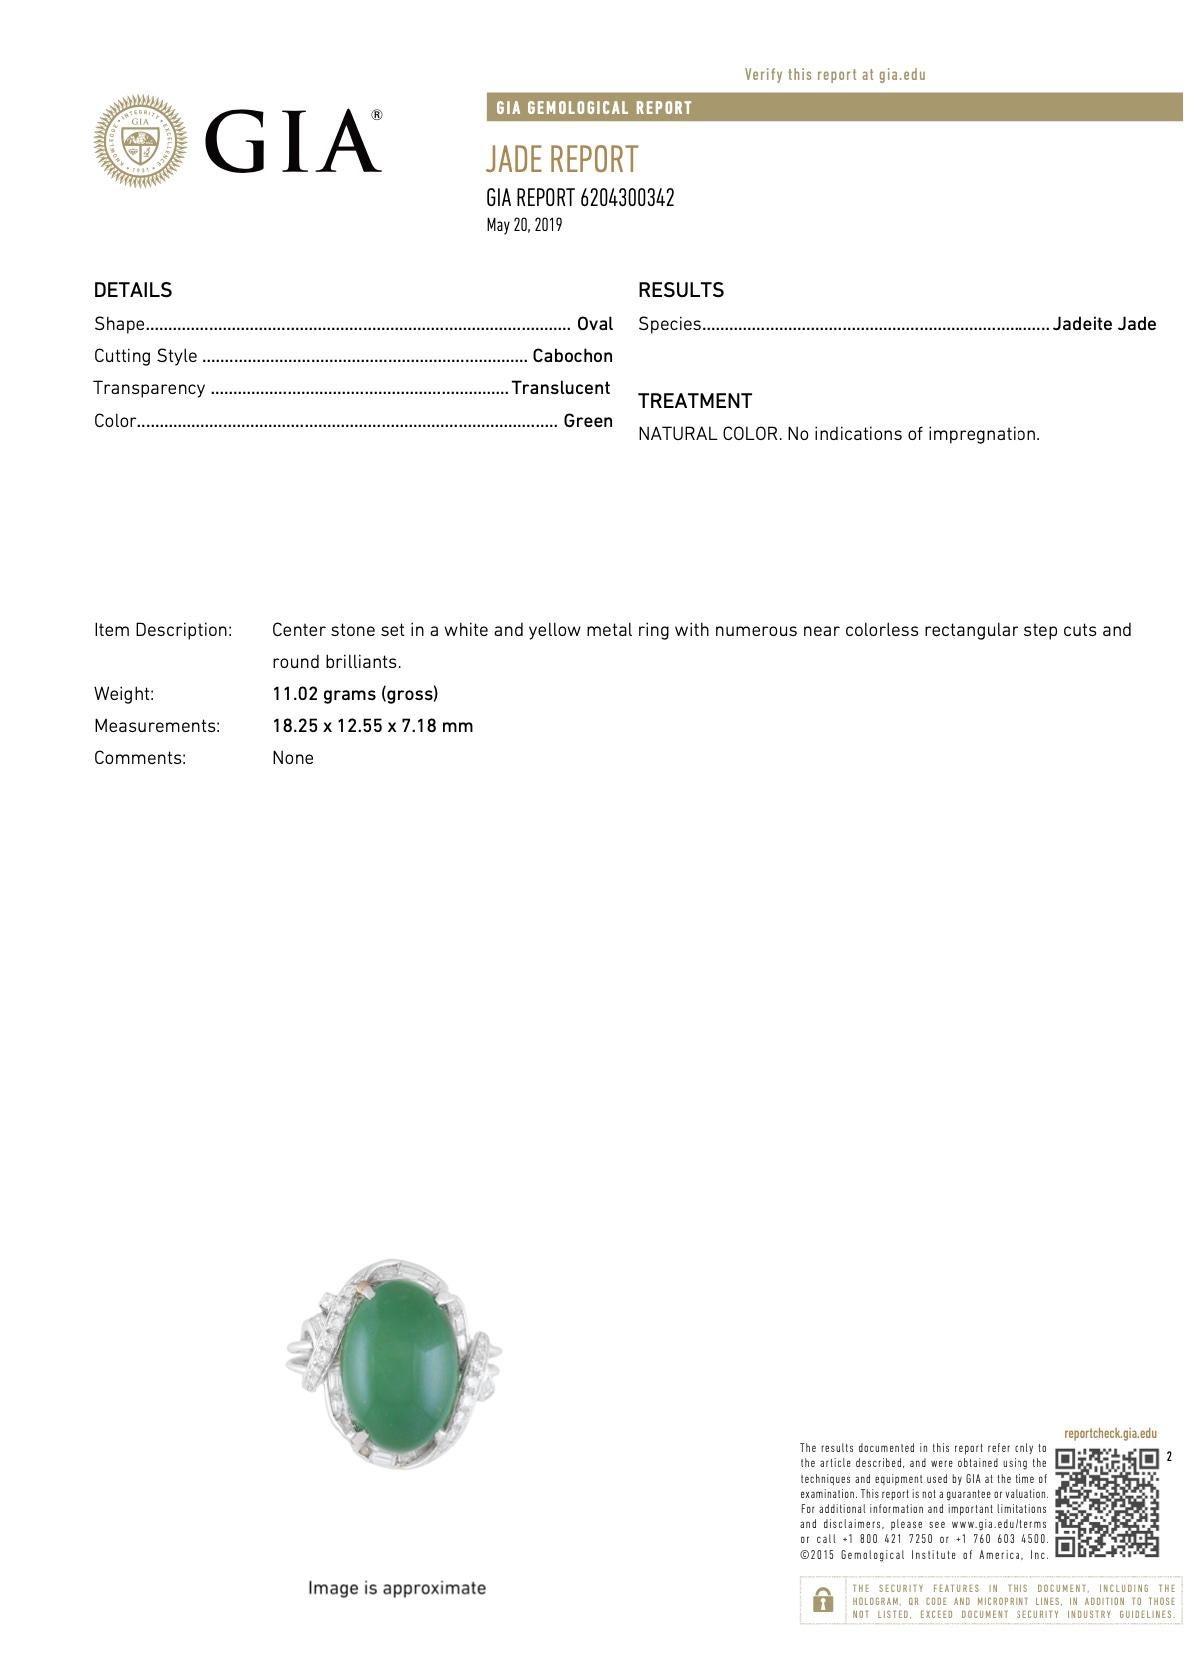 jade price per gram